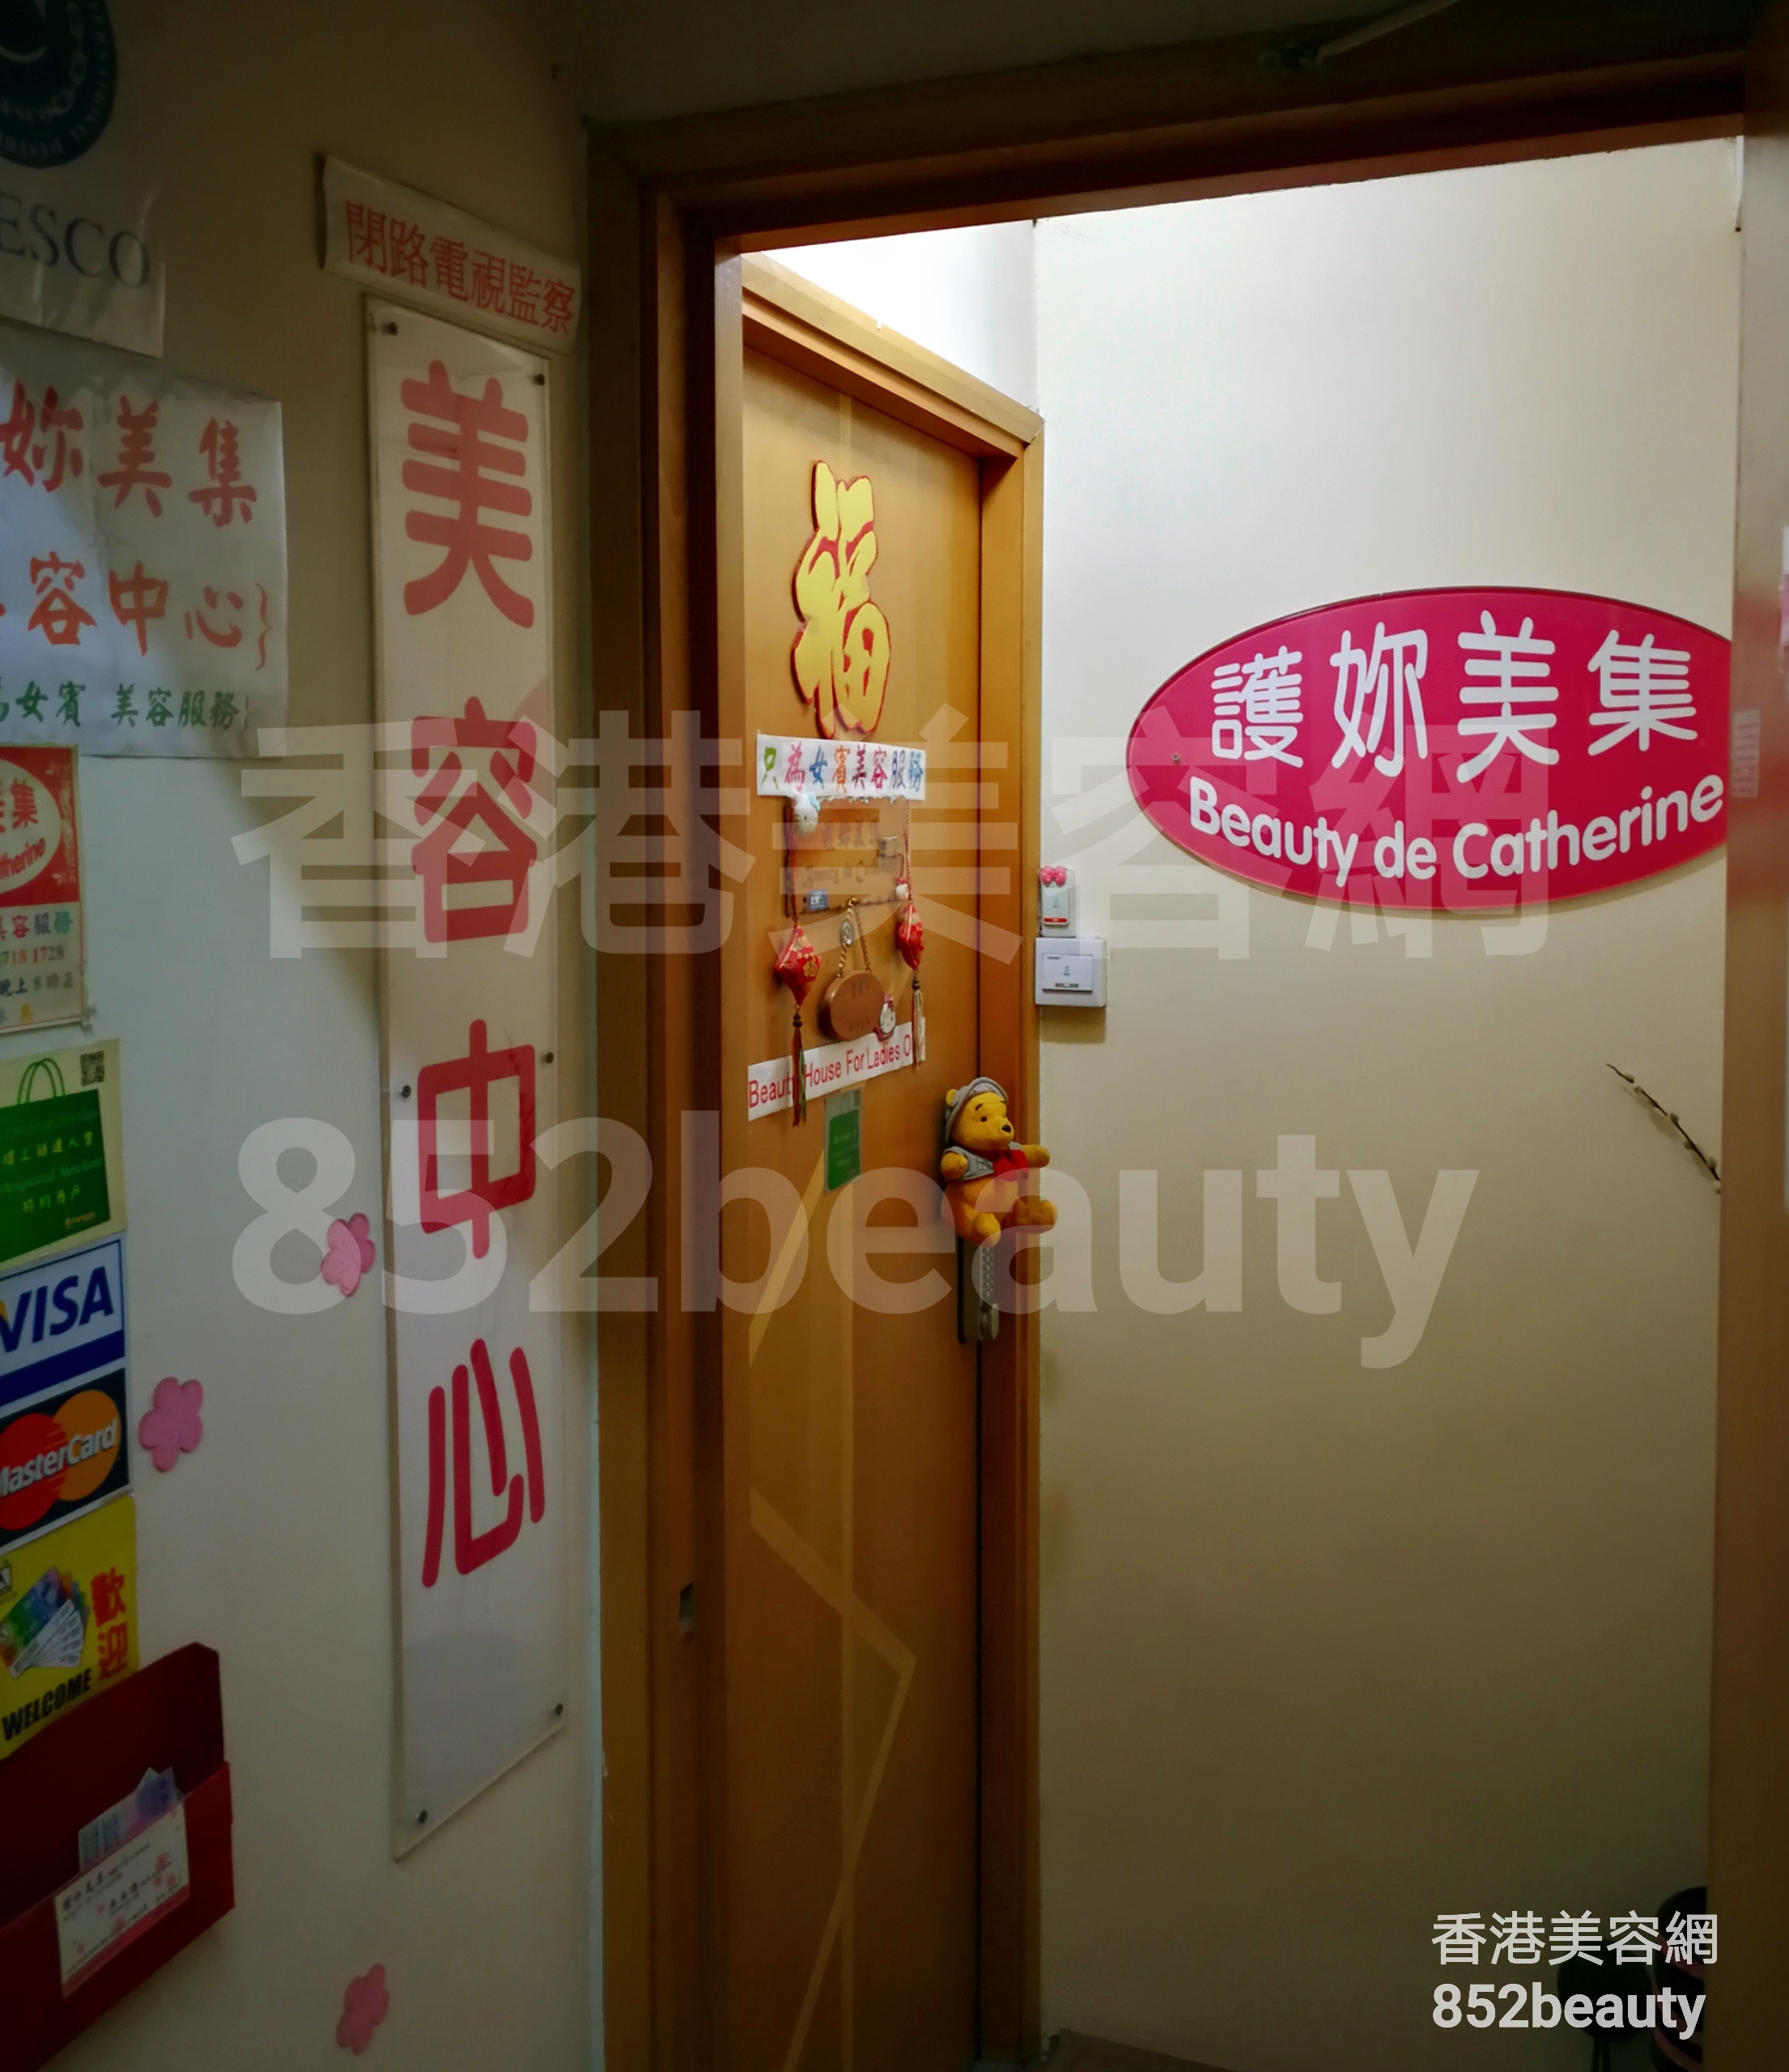 Hong Kong Beauty Salon Beauty Salon / Beautician: 護你美集